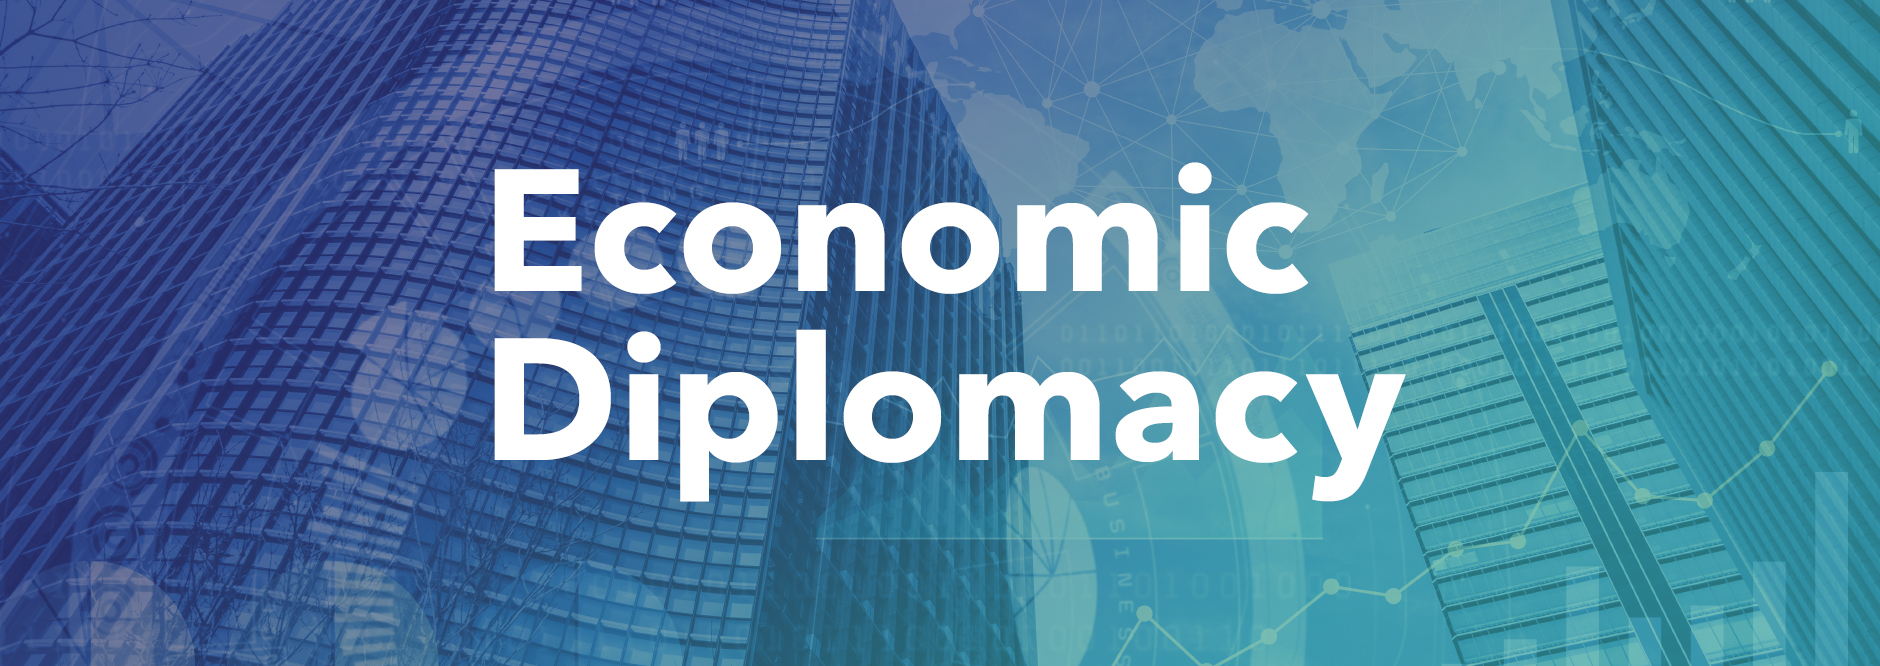 Economic Diplomacy banner